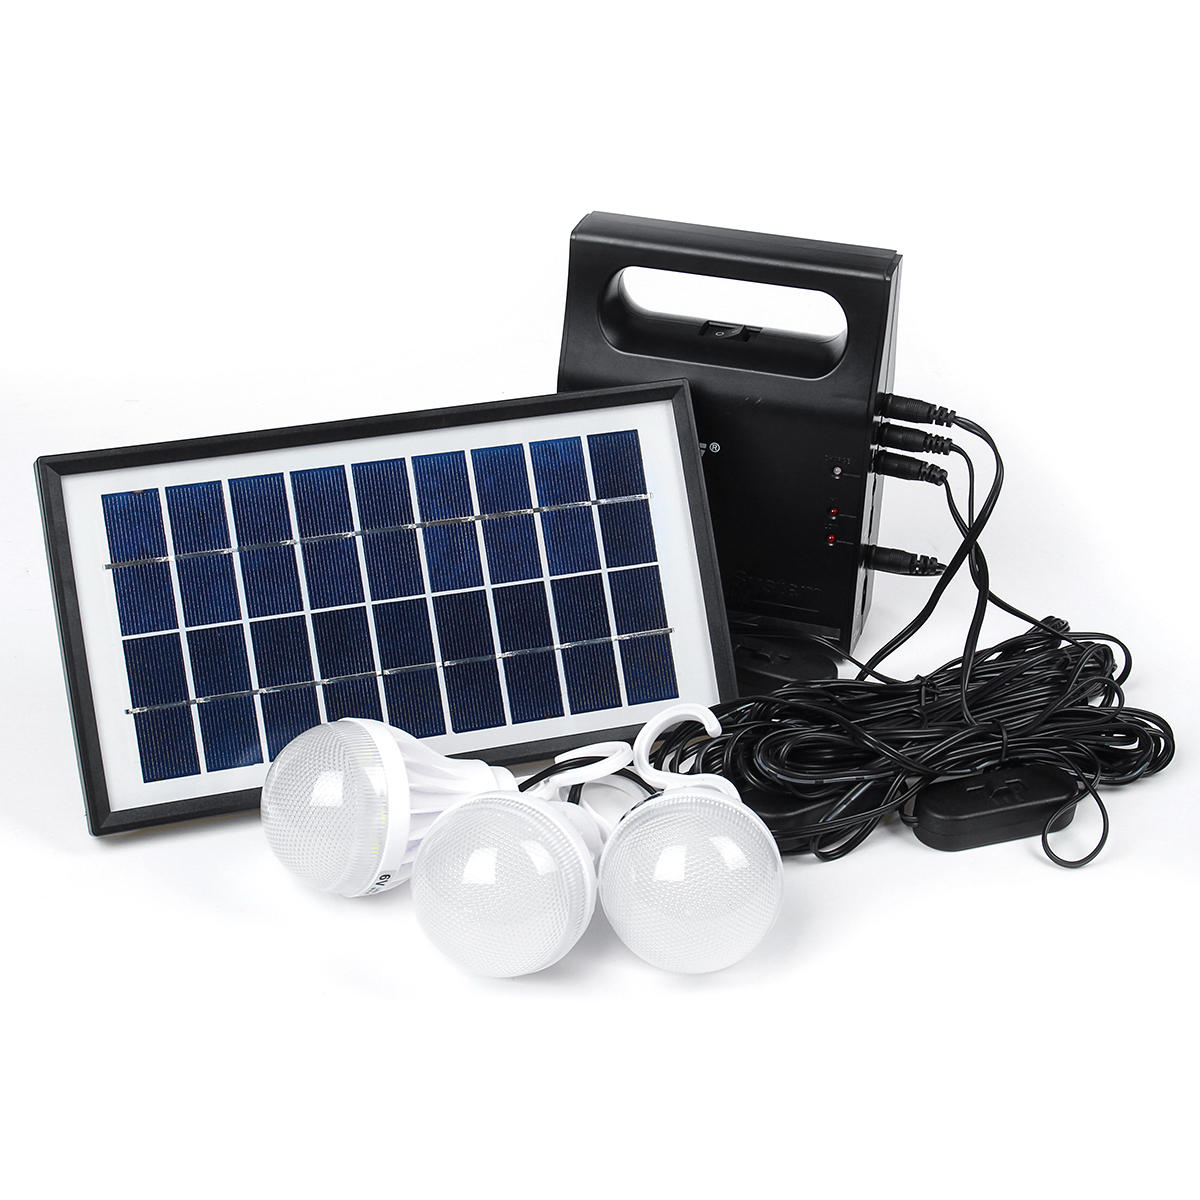 نظام إضاءة لوحة شمسية بمصابيح LED USB 6V للخارج، والحدائق، والتخييم، والطوارئ